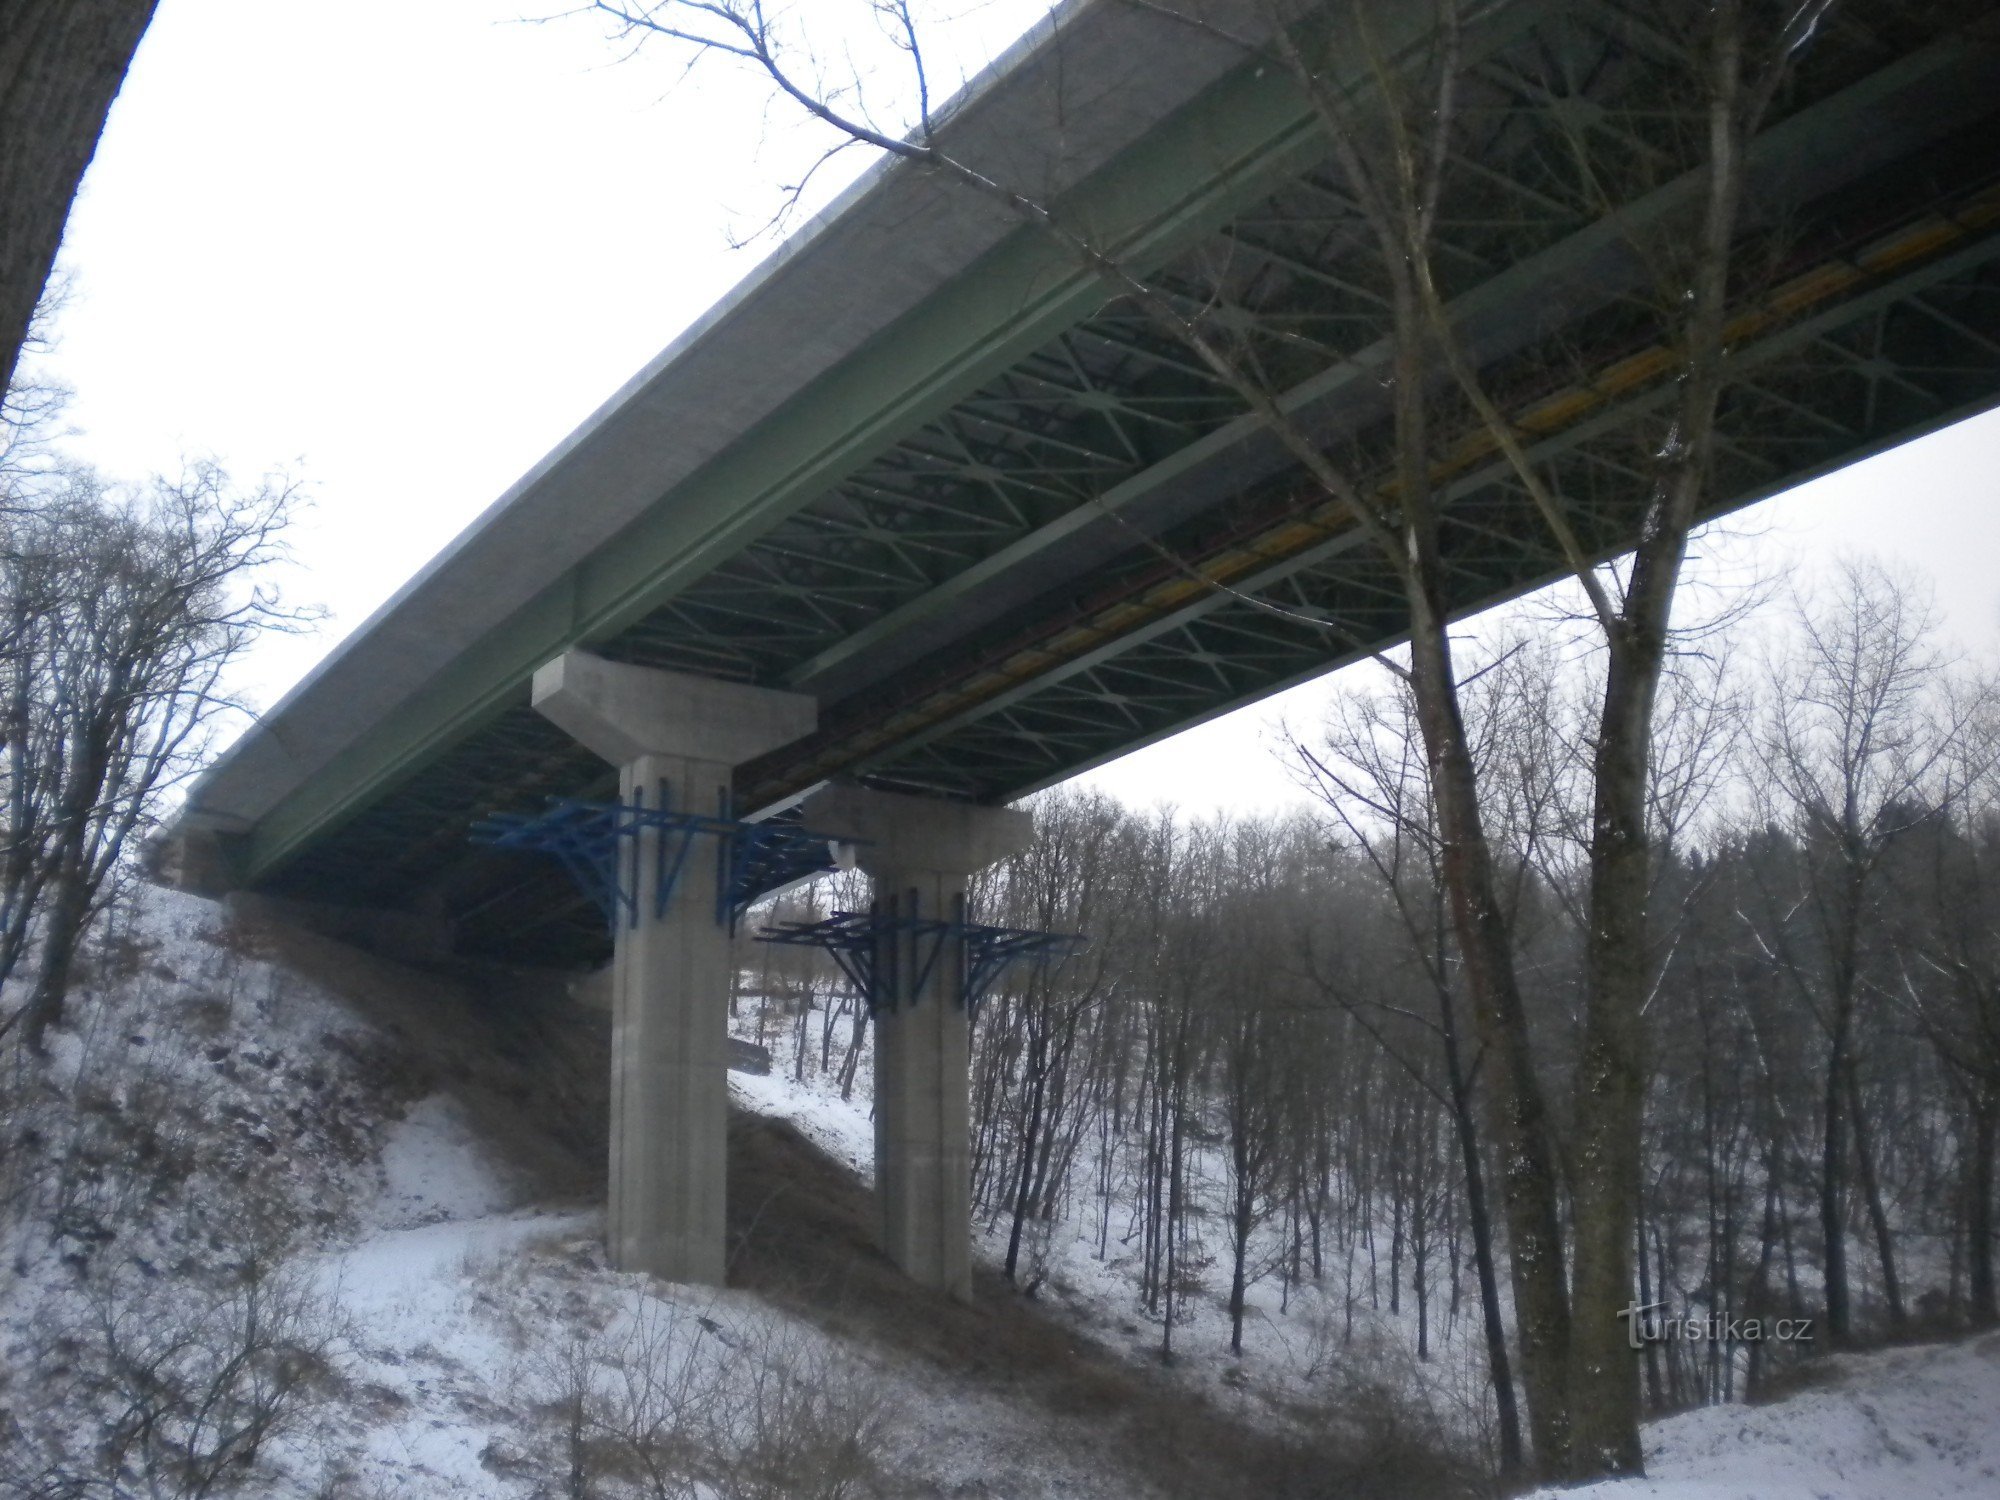 un mic pod de autostradă peste vale.